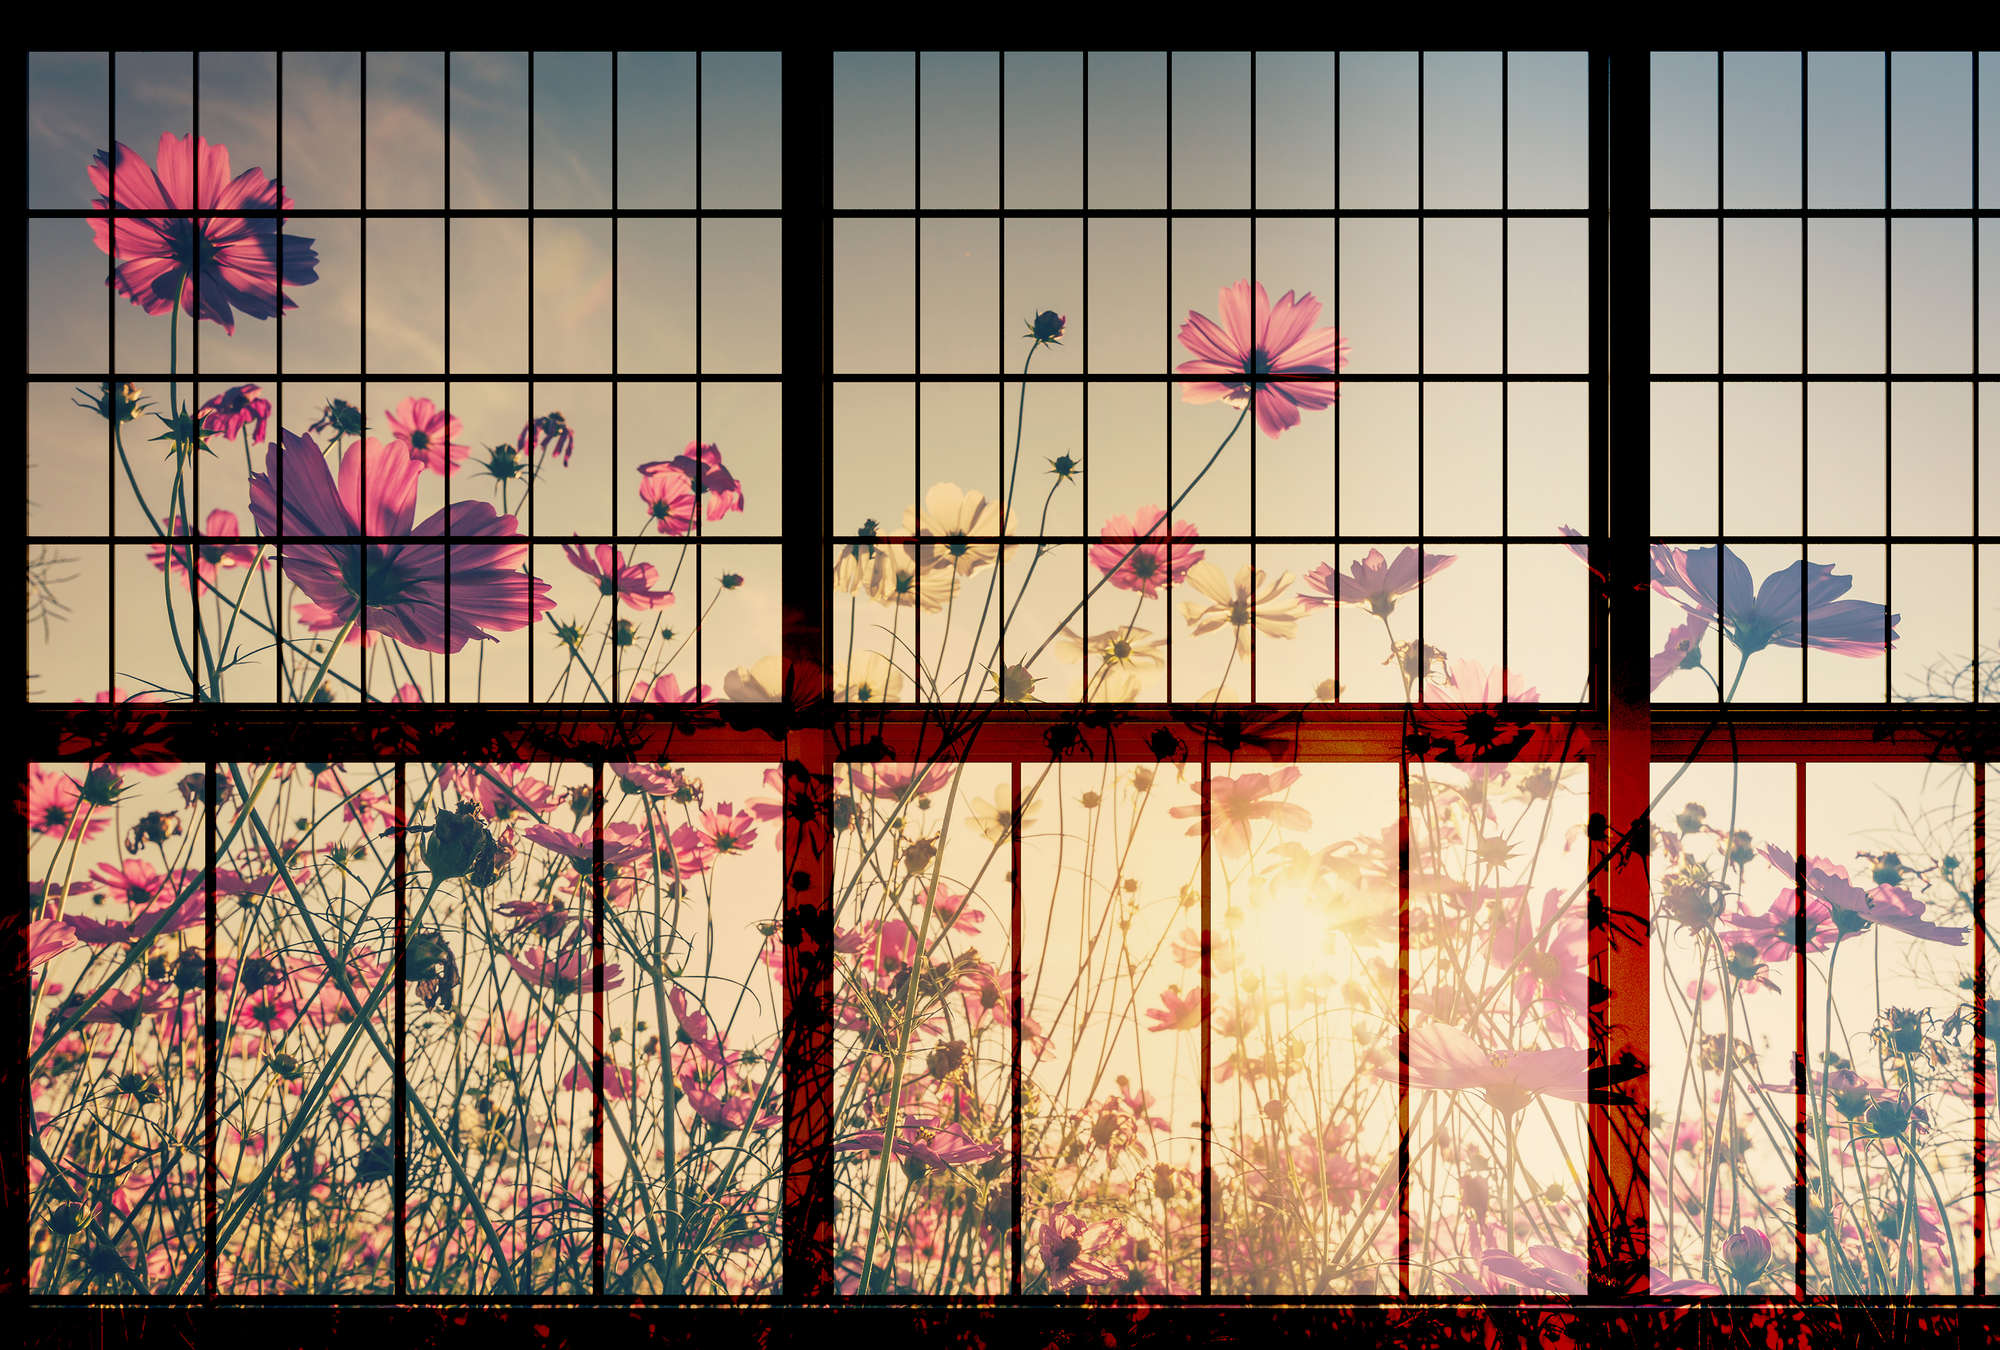             Meadow 1 - Papel Pintado Muntin para Ventanas con Flores Meadow - Verde, Rosa | Perla Liso Fleece
        